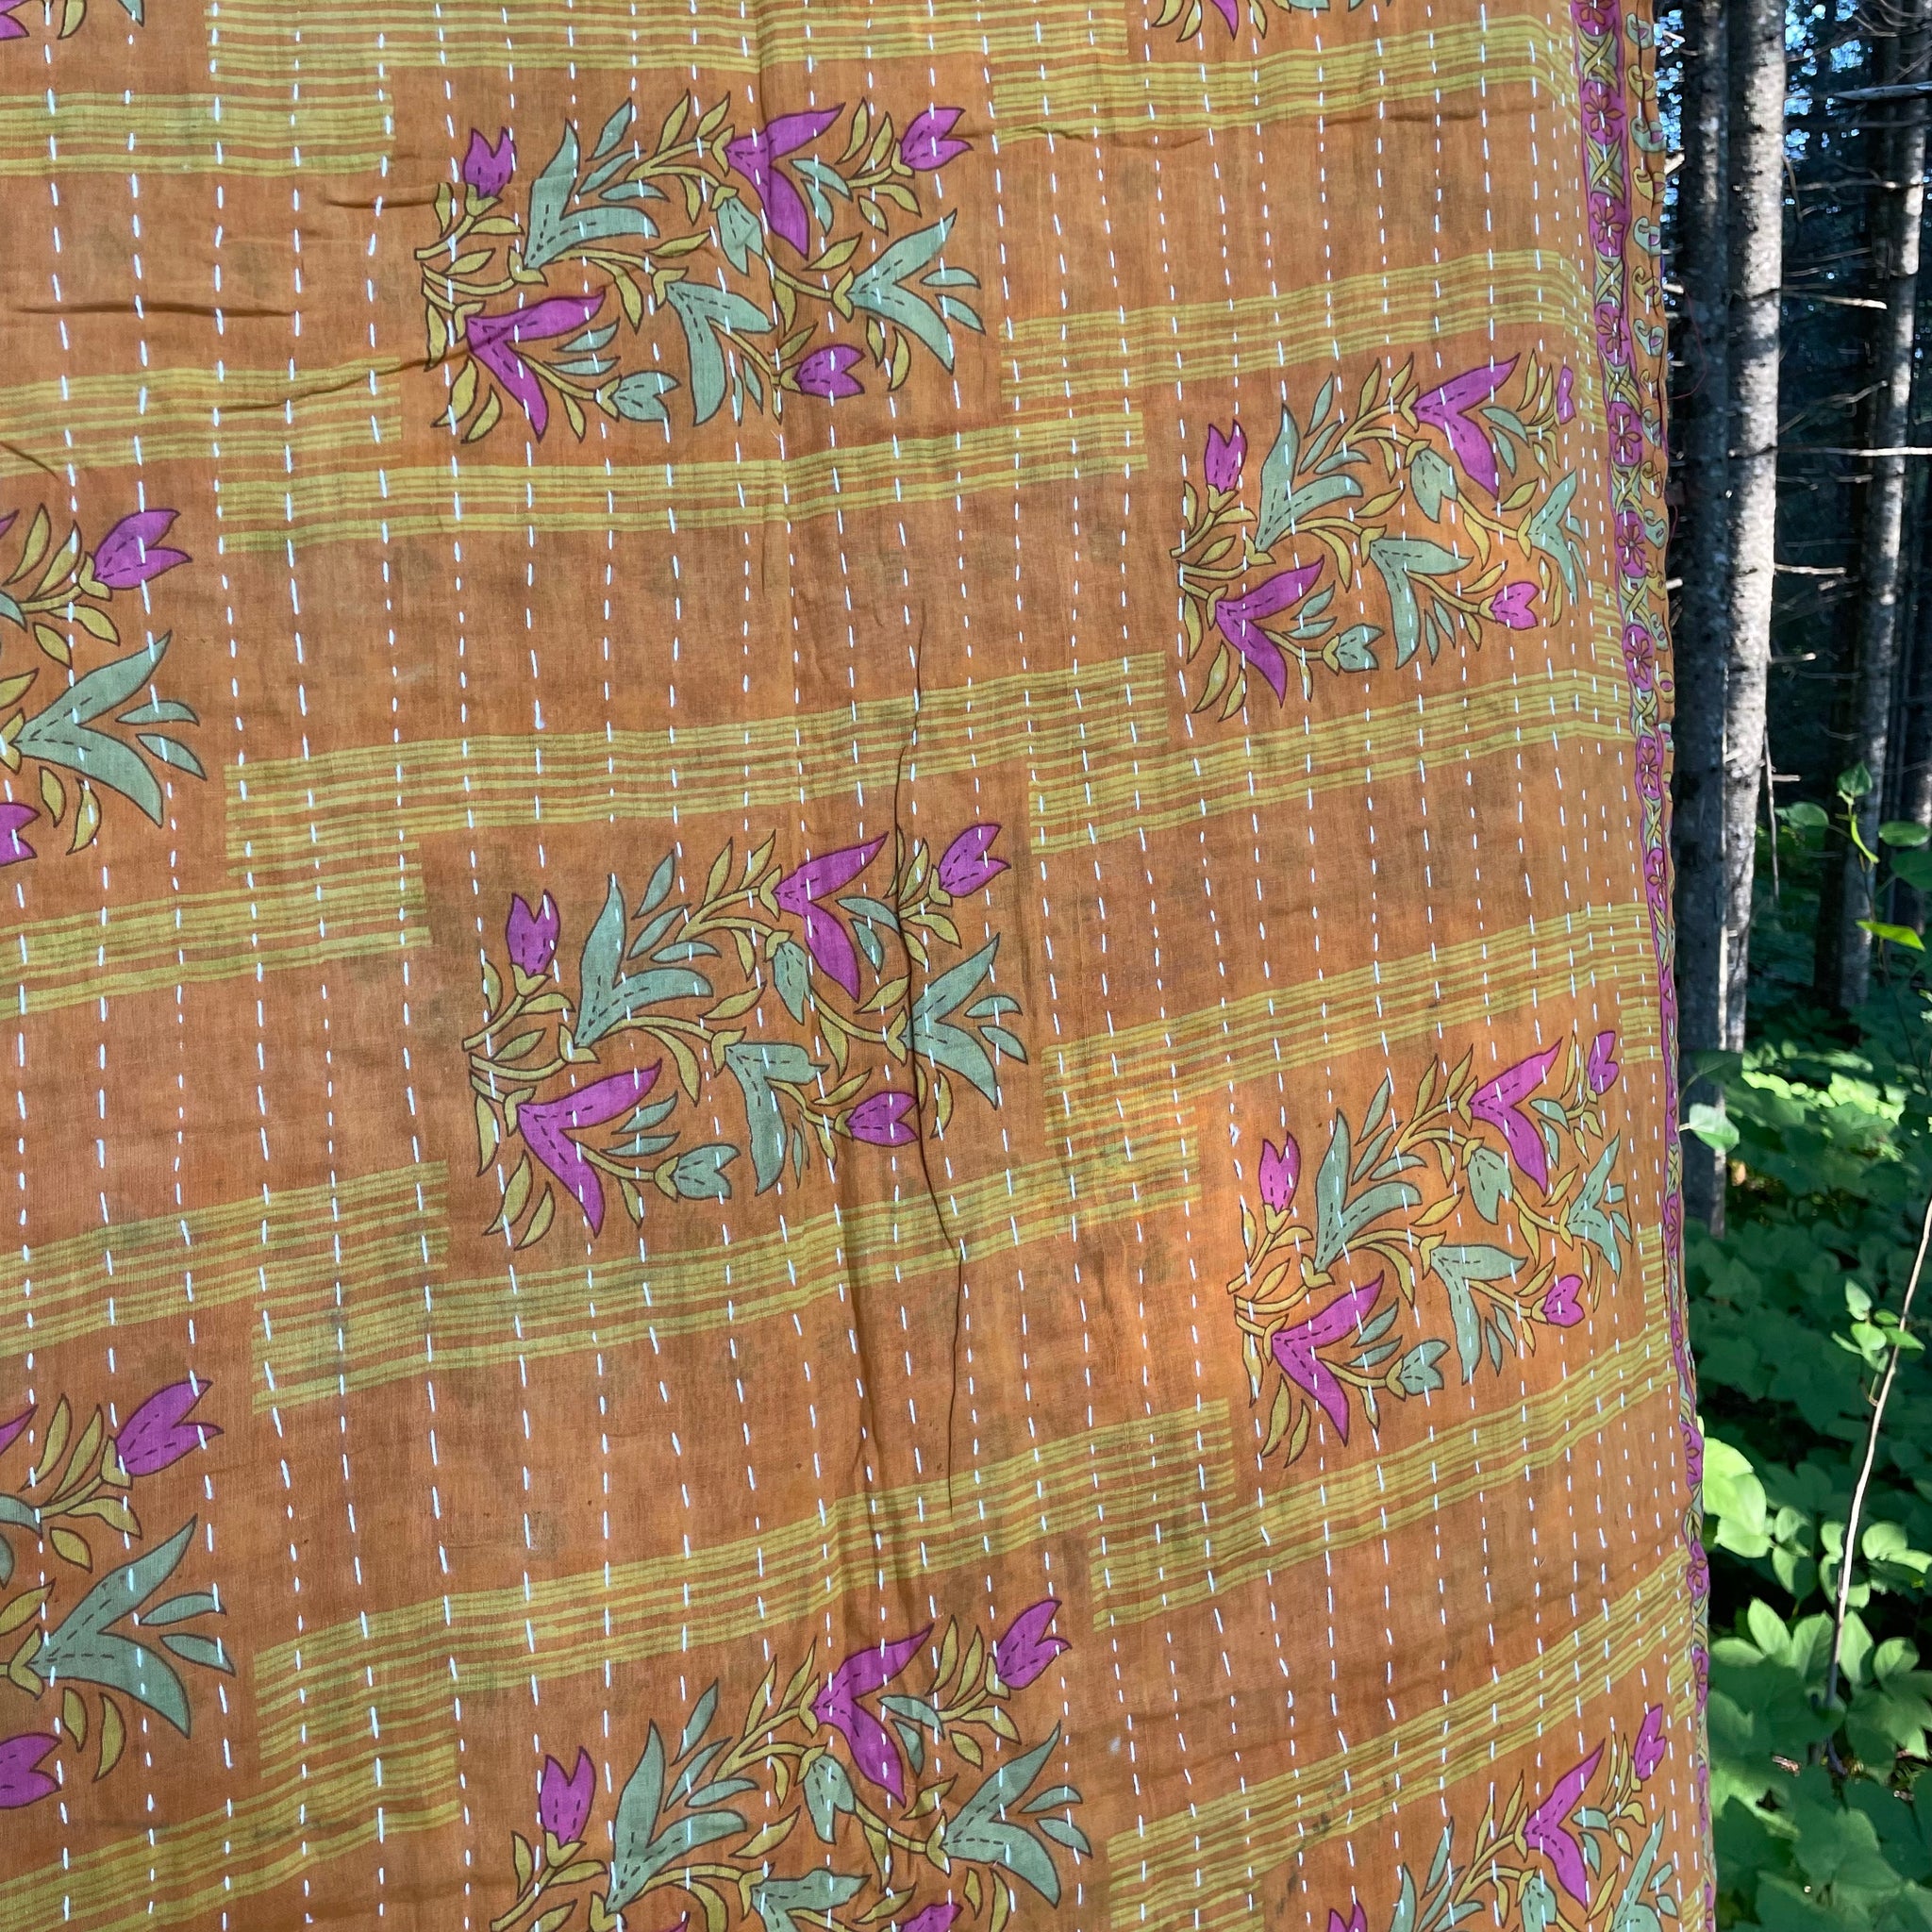 Recycled Sari Kantha Blanket 10